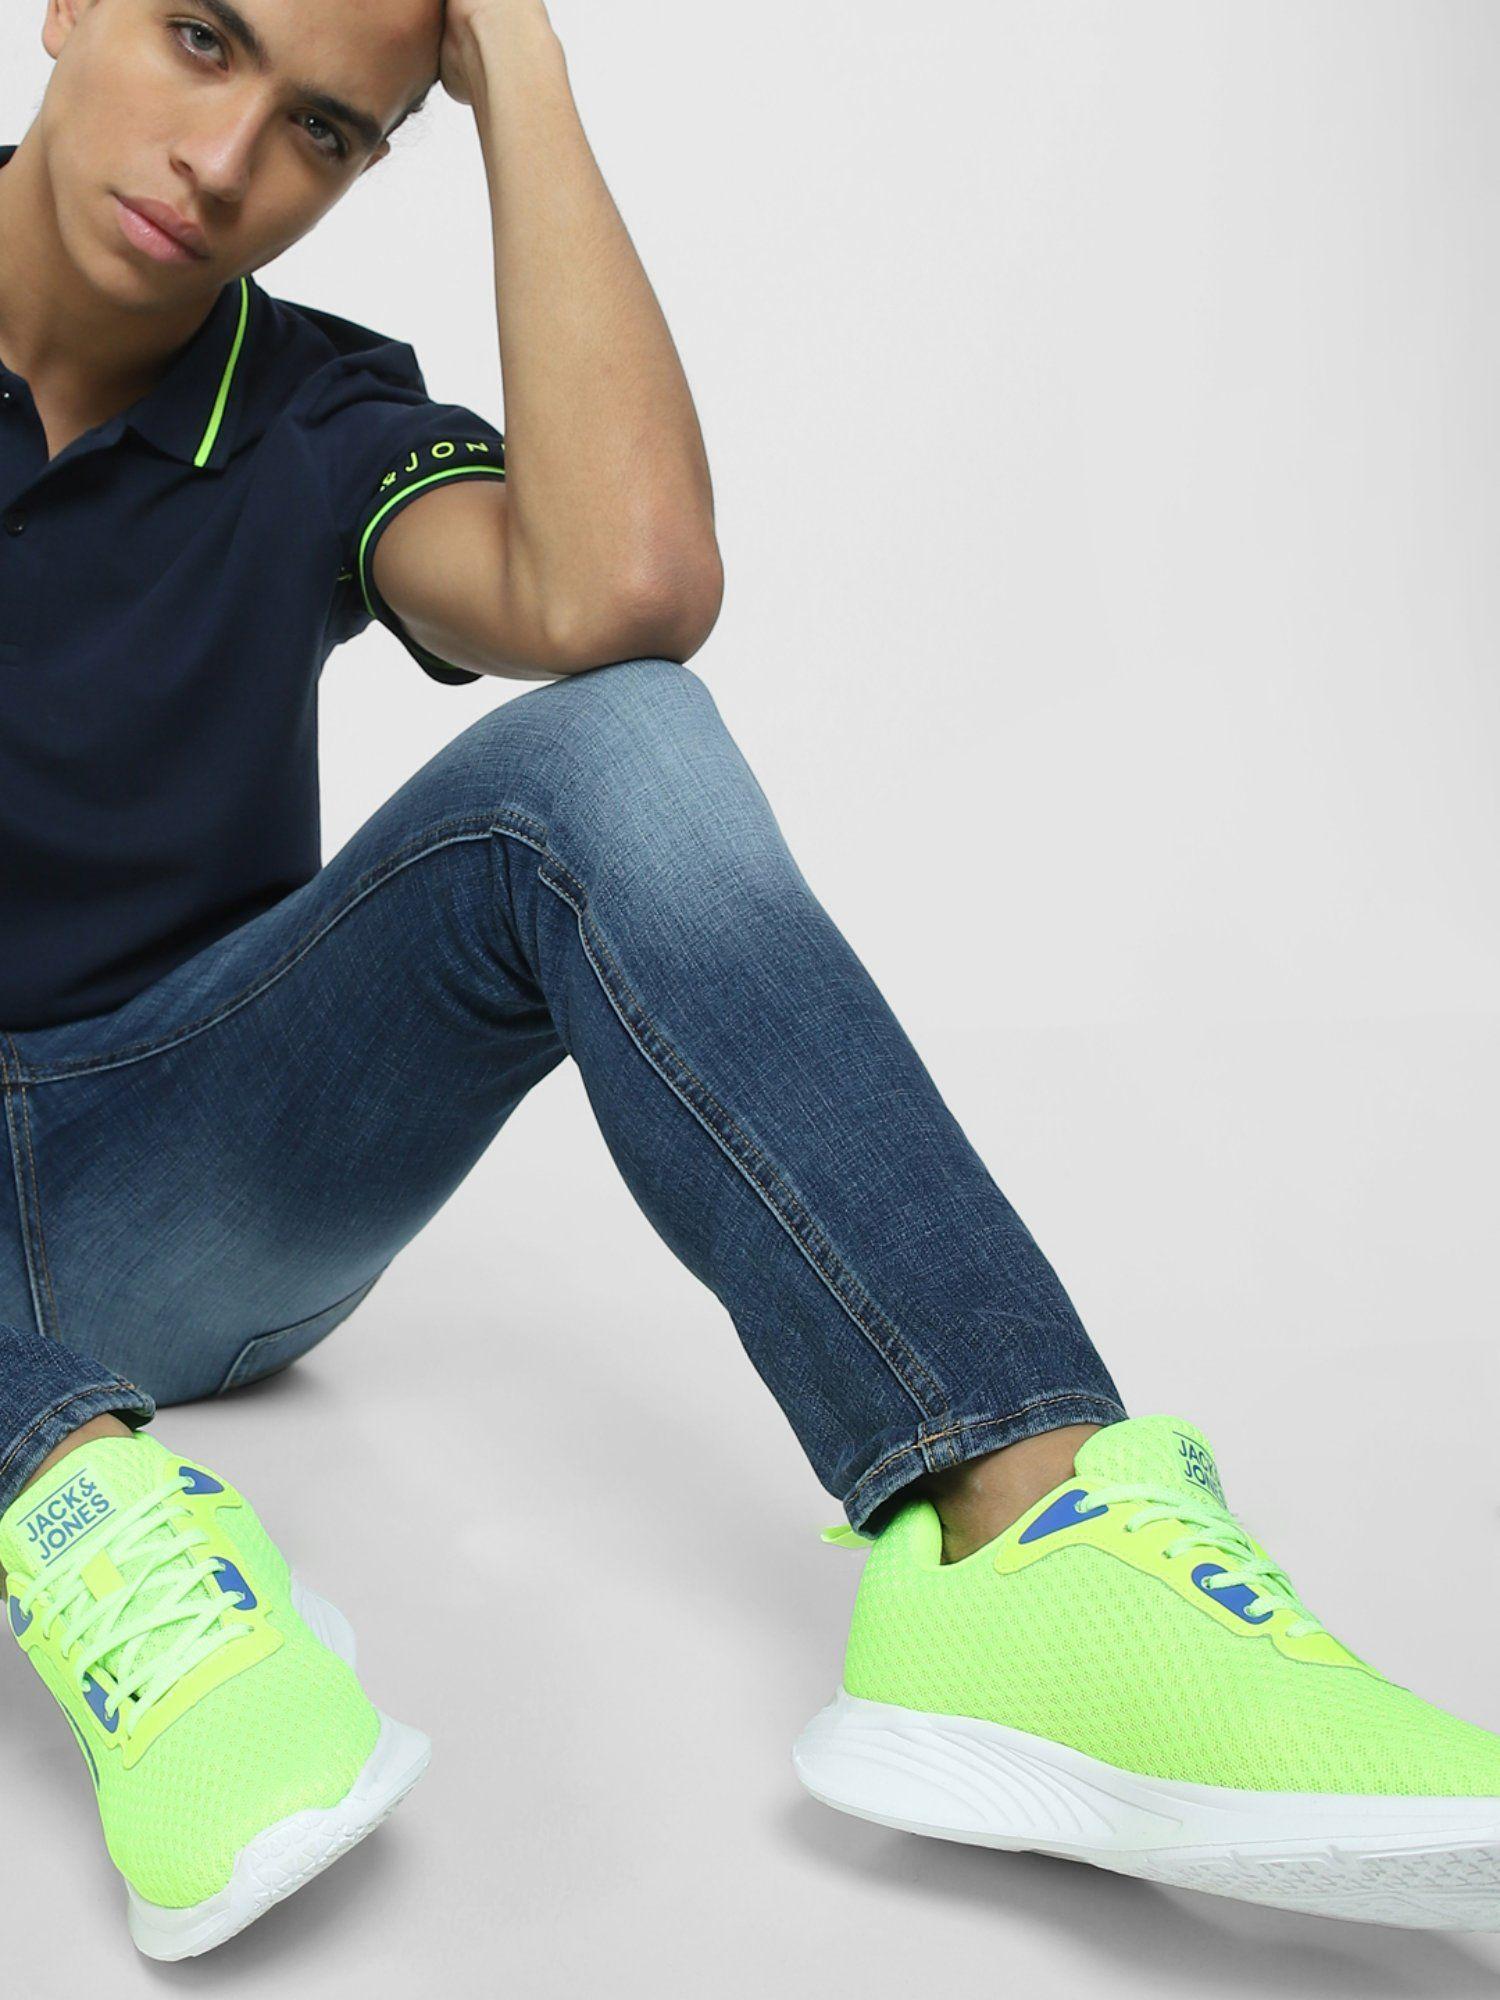 neon-green-sneakers